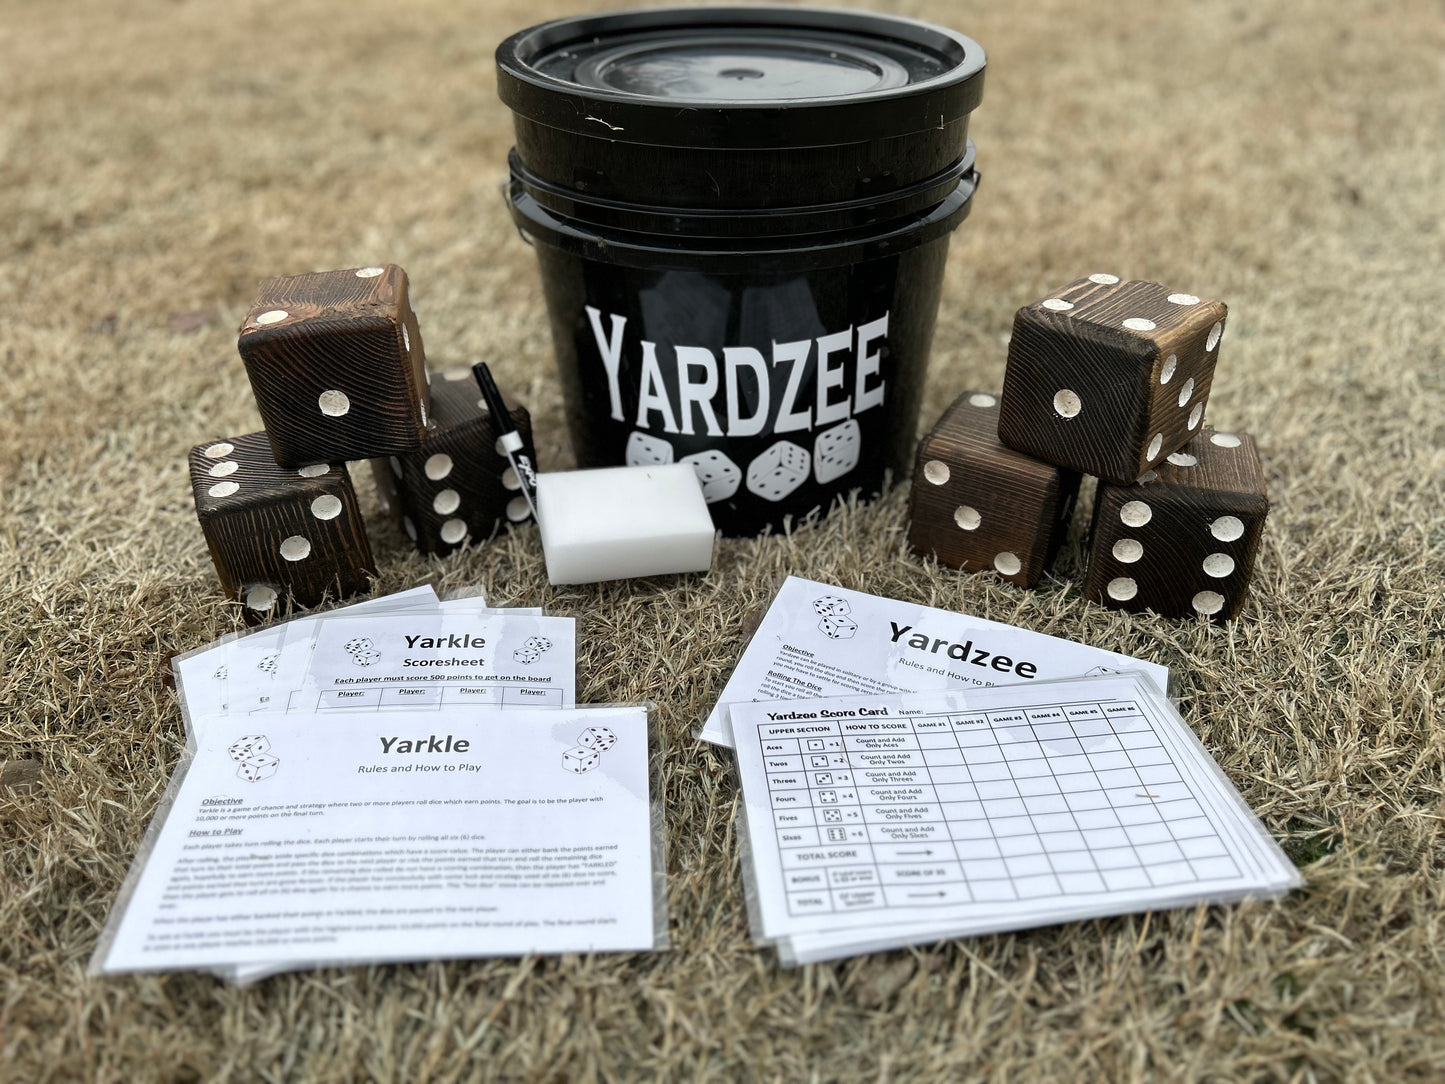 Giant Yardzee/Yarkle Game